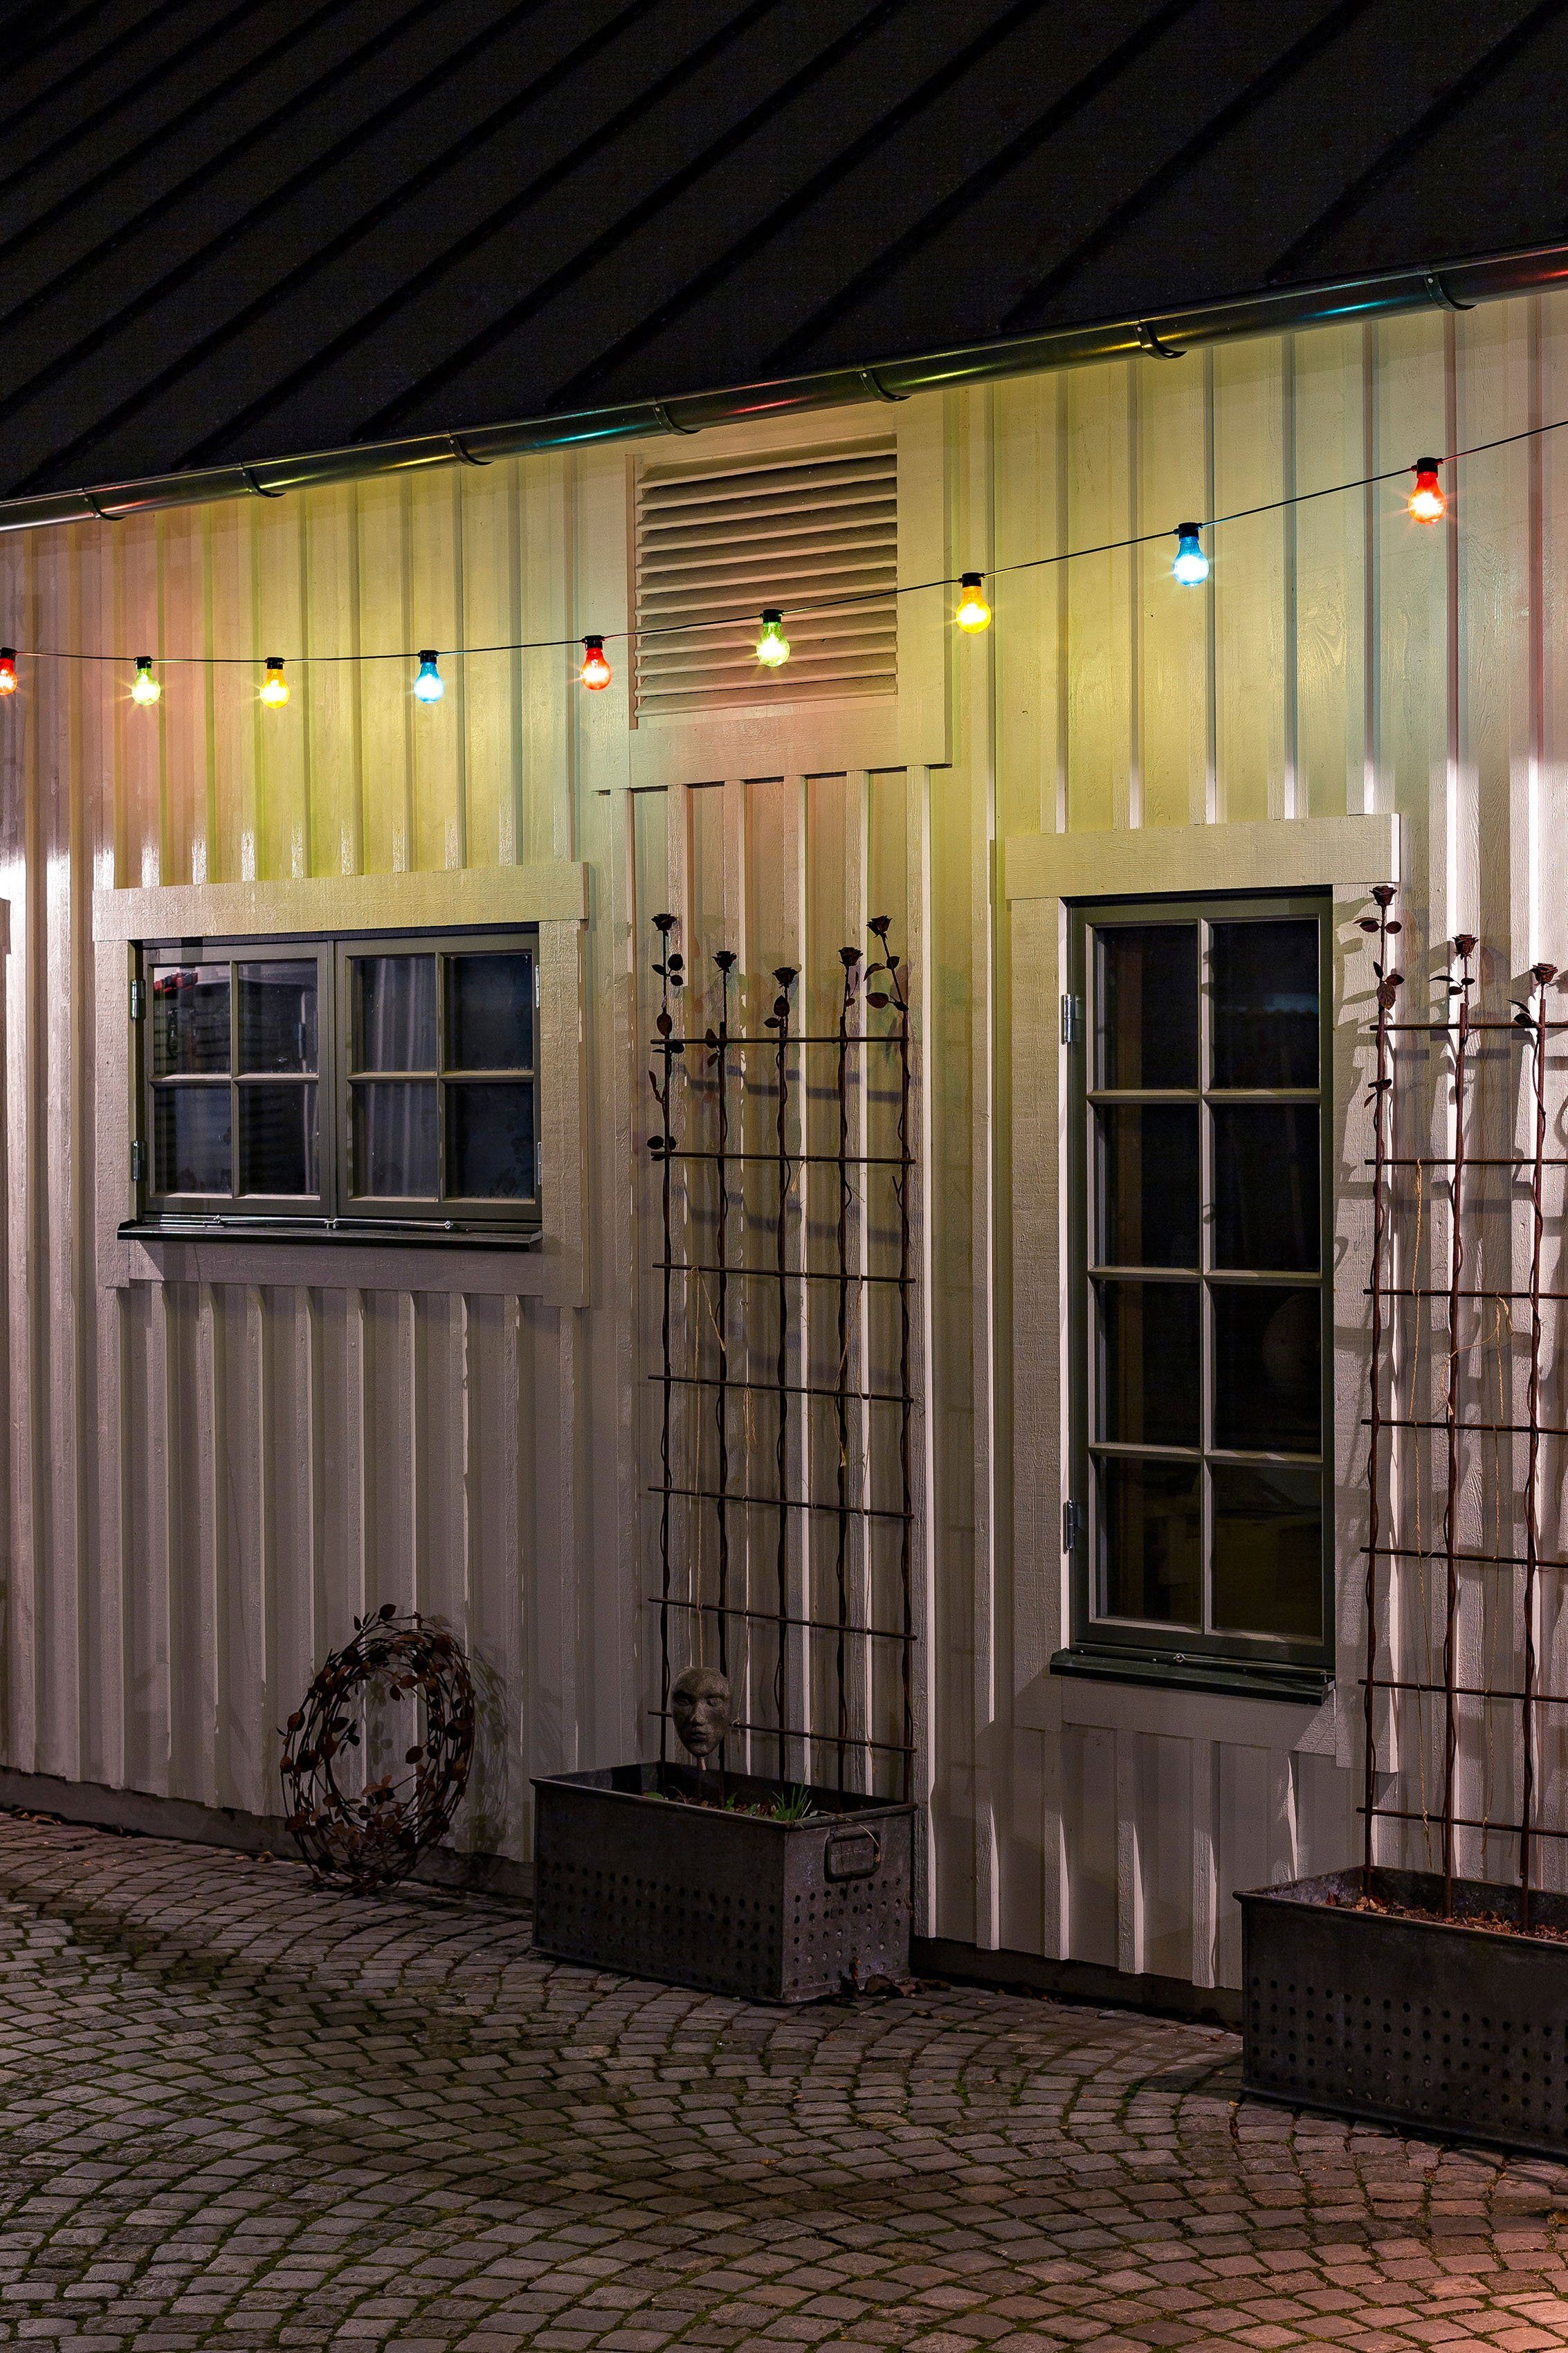 KONSTSMIDE Birnen Weihnachtsdeko aussen, 20-flammig, / Biergartenkette, bunte Dioden LED 160 20 weiße warm LED-Lichterkette